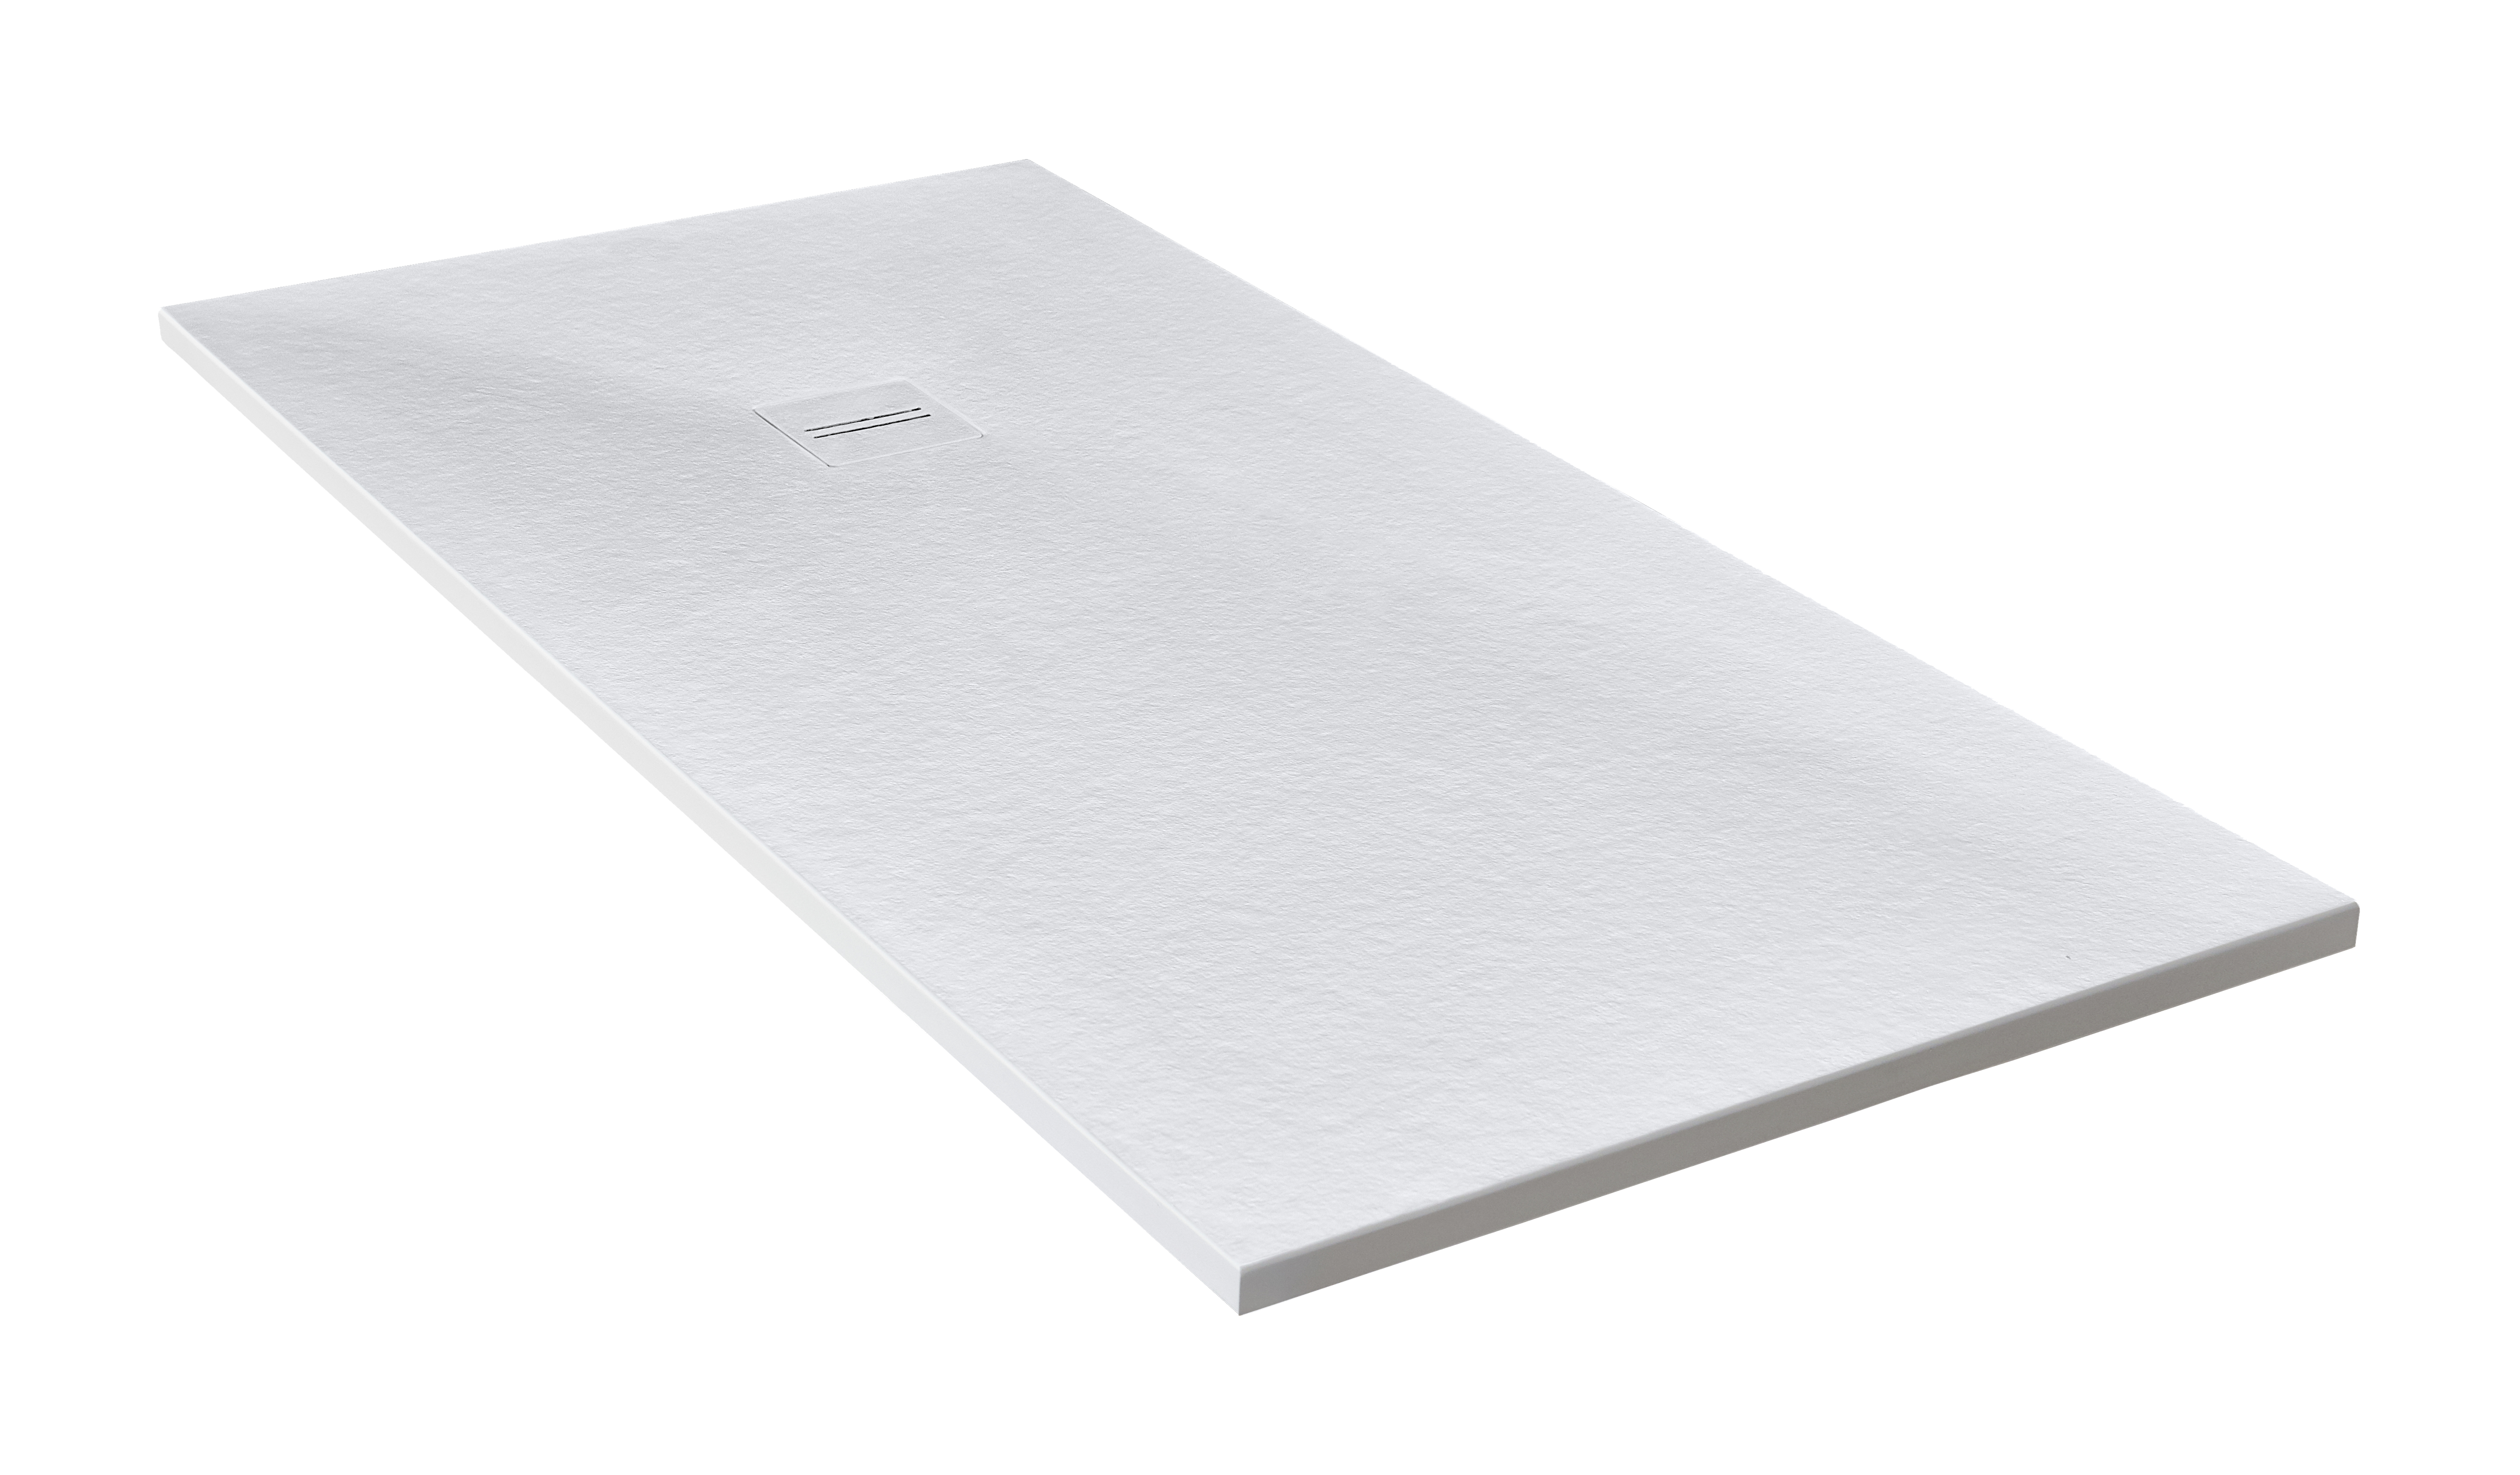 Plato de ducha cosmos 160x85 cm blanco